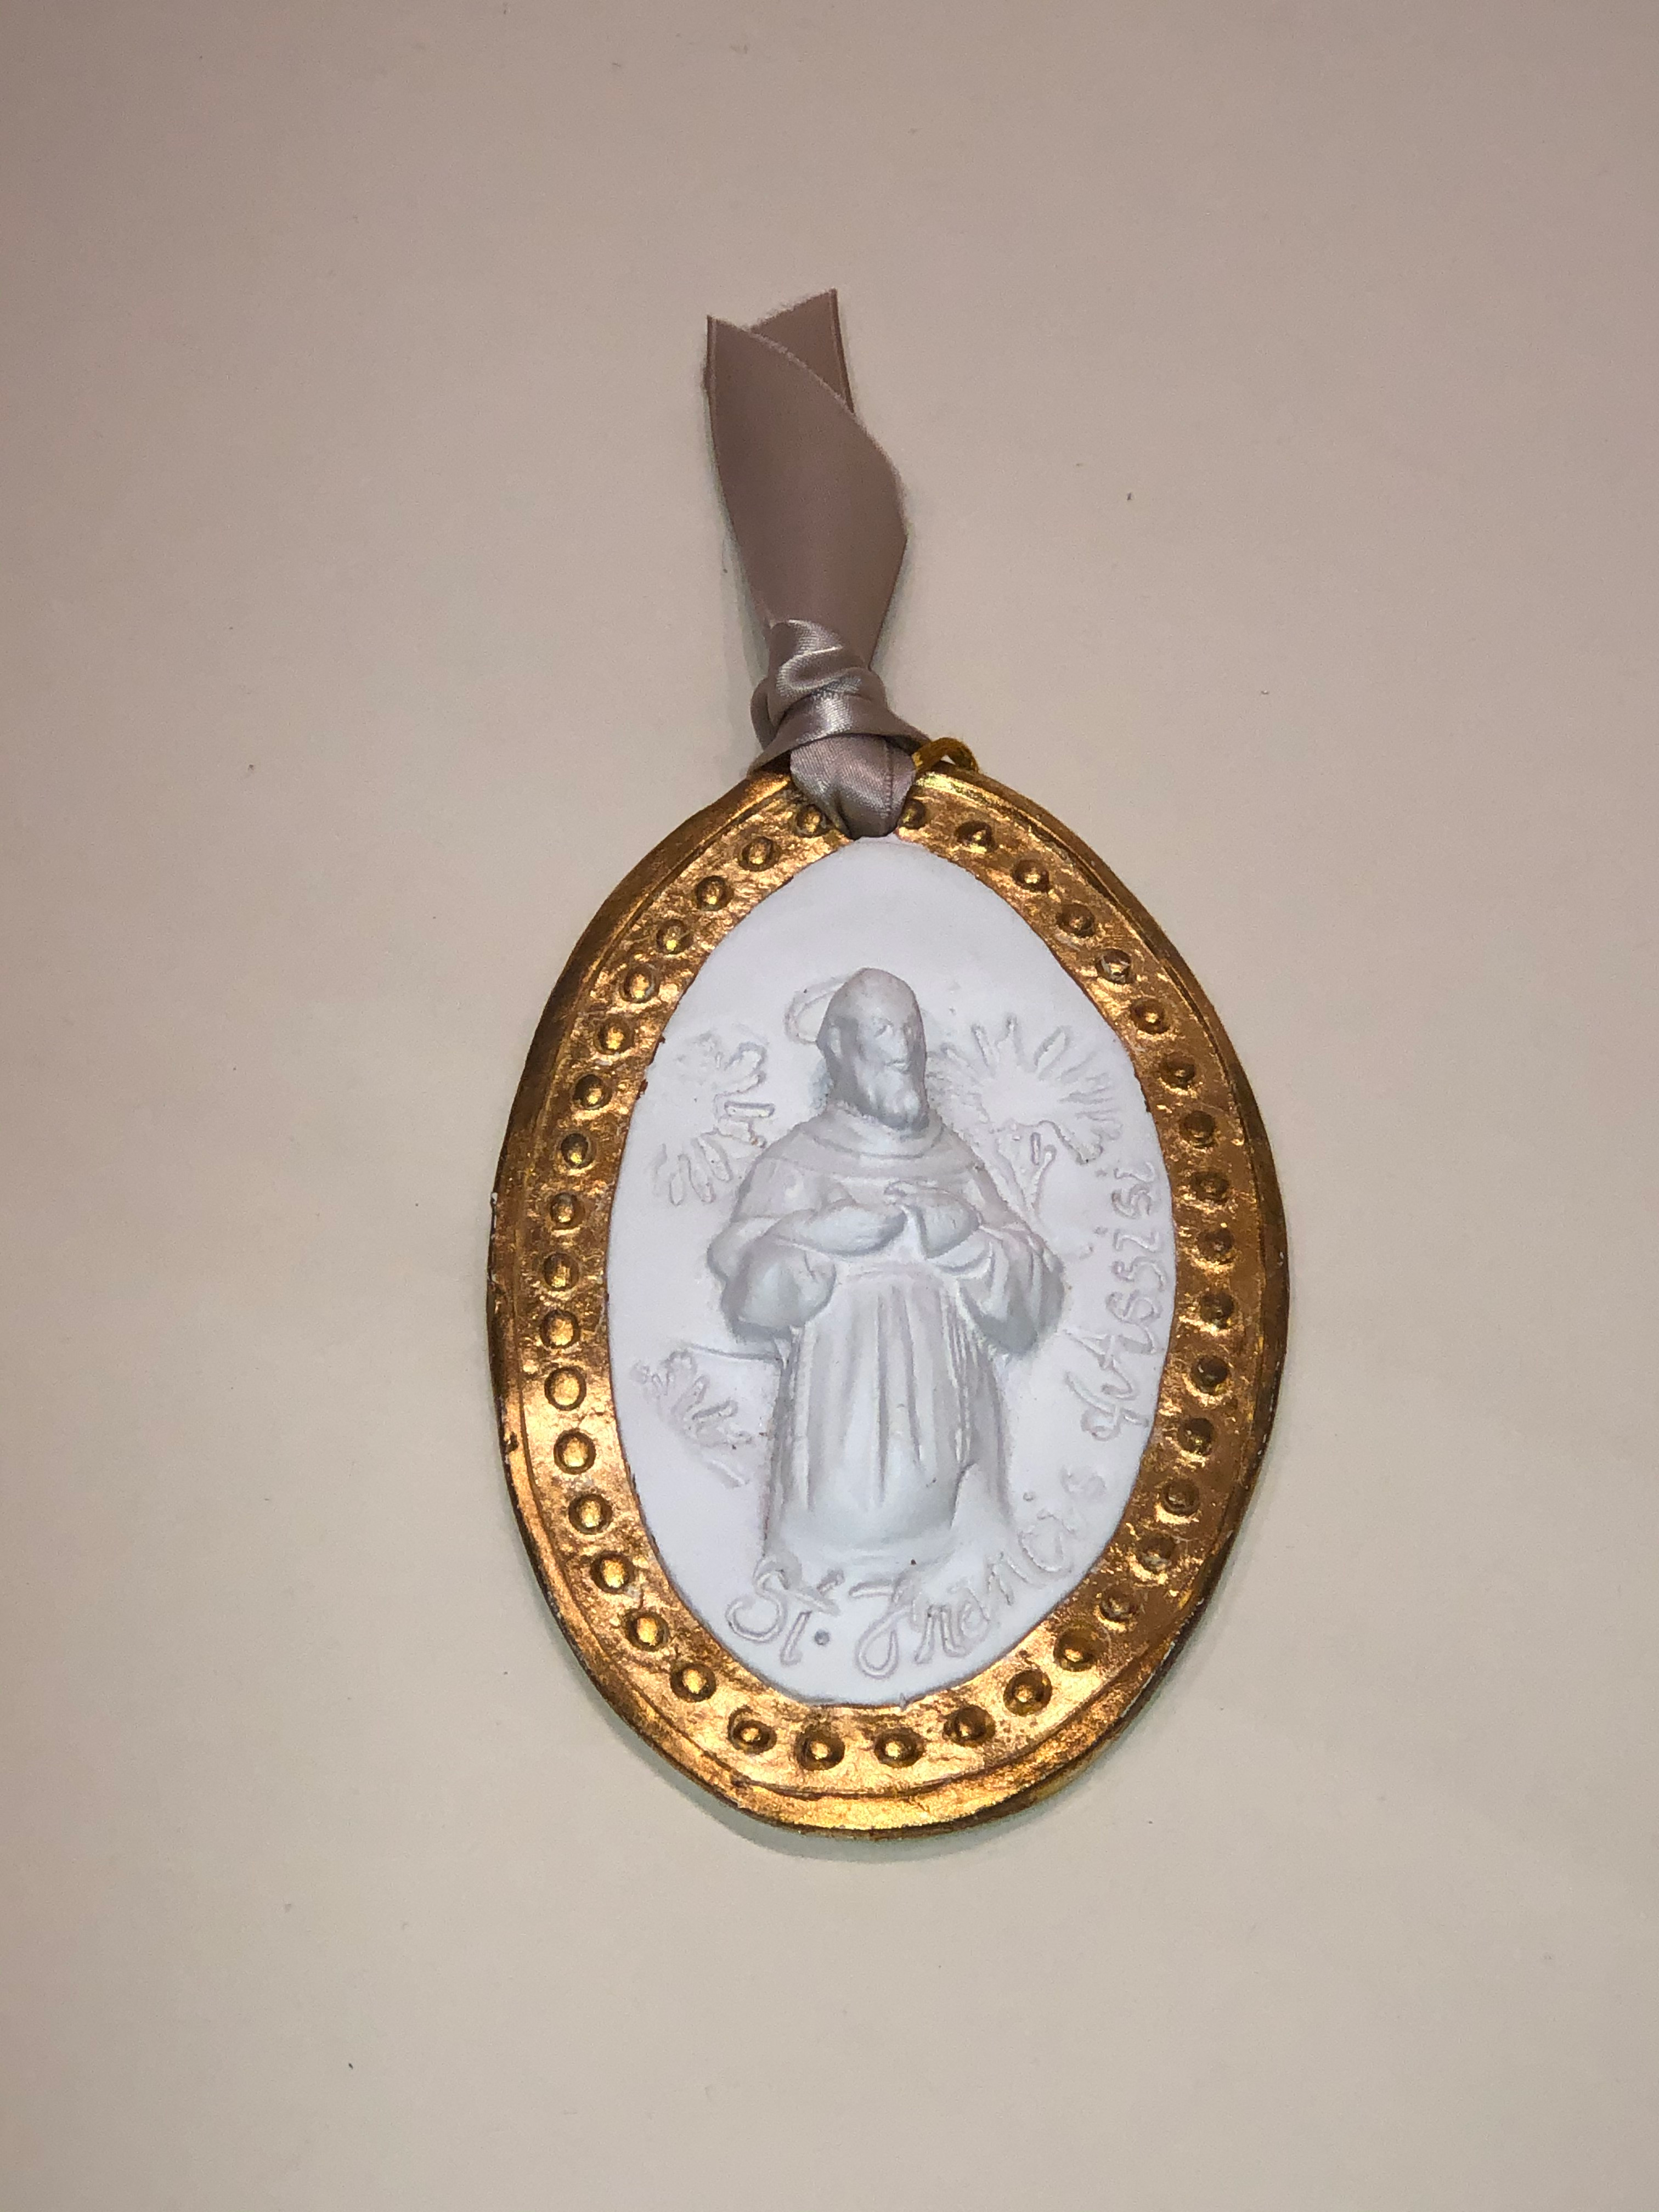 Saint Francis Plaque with Gold Trim